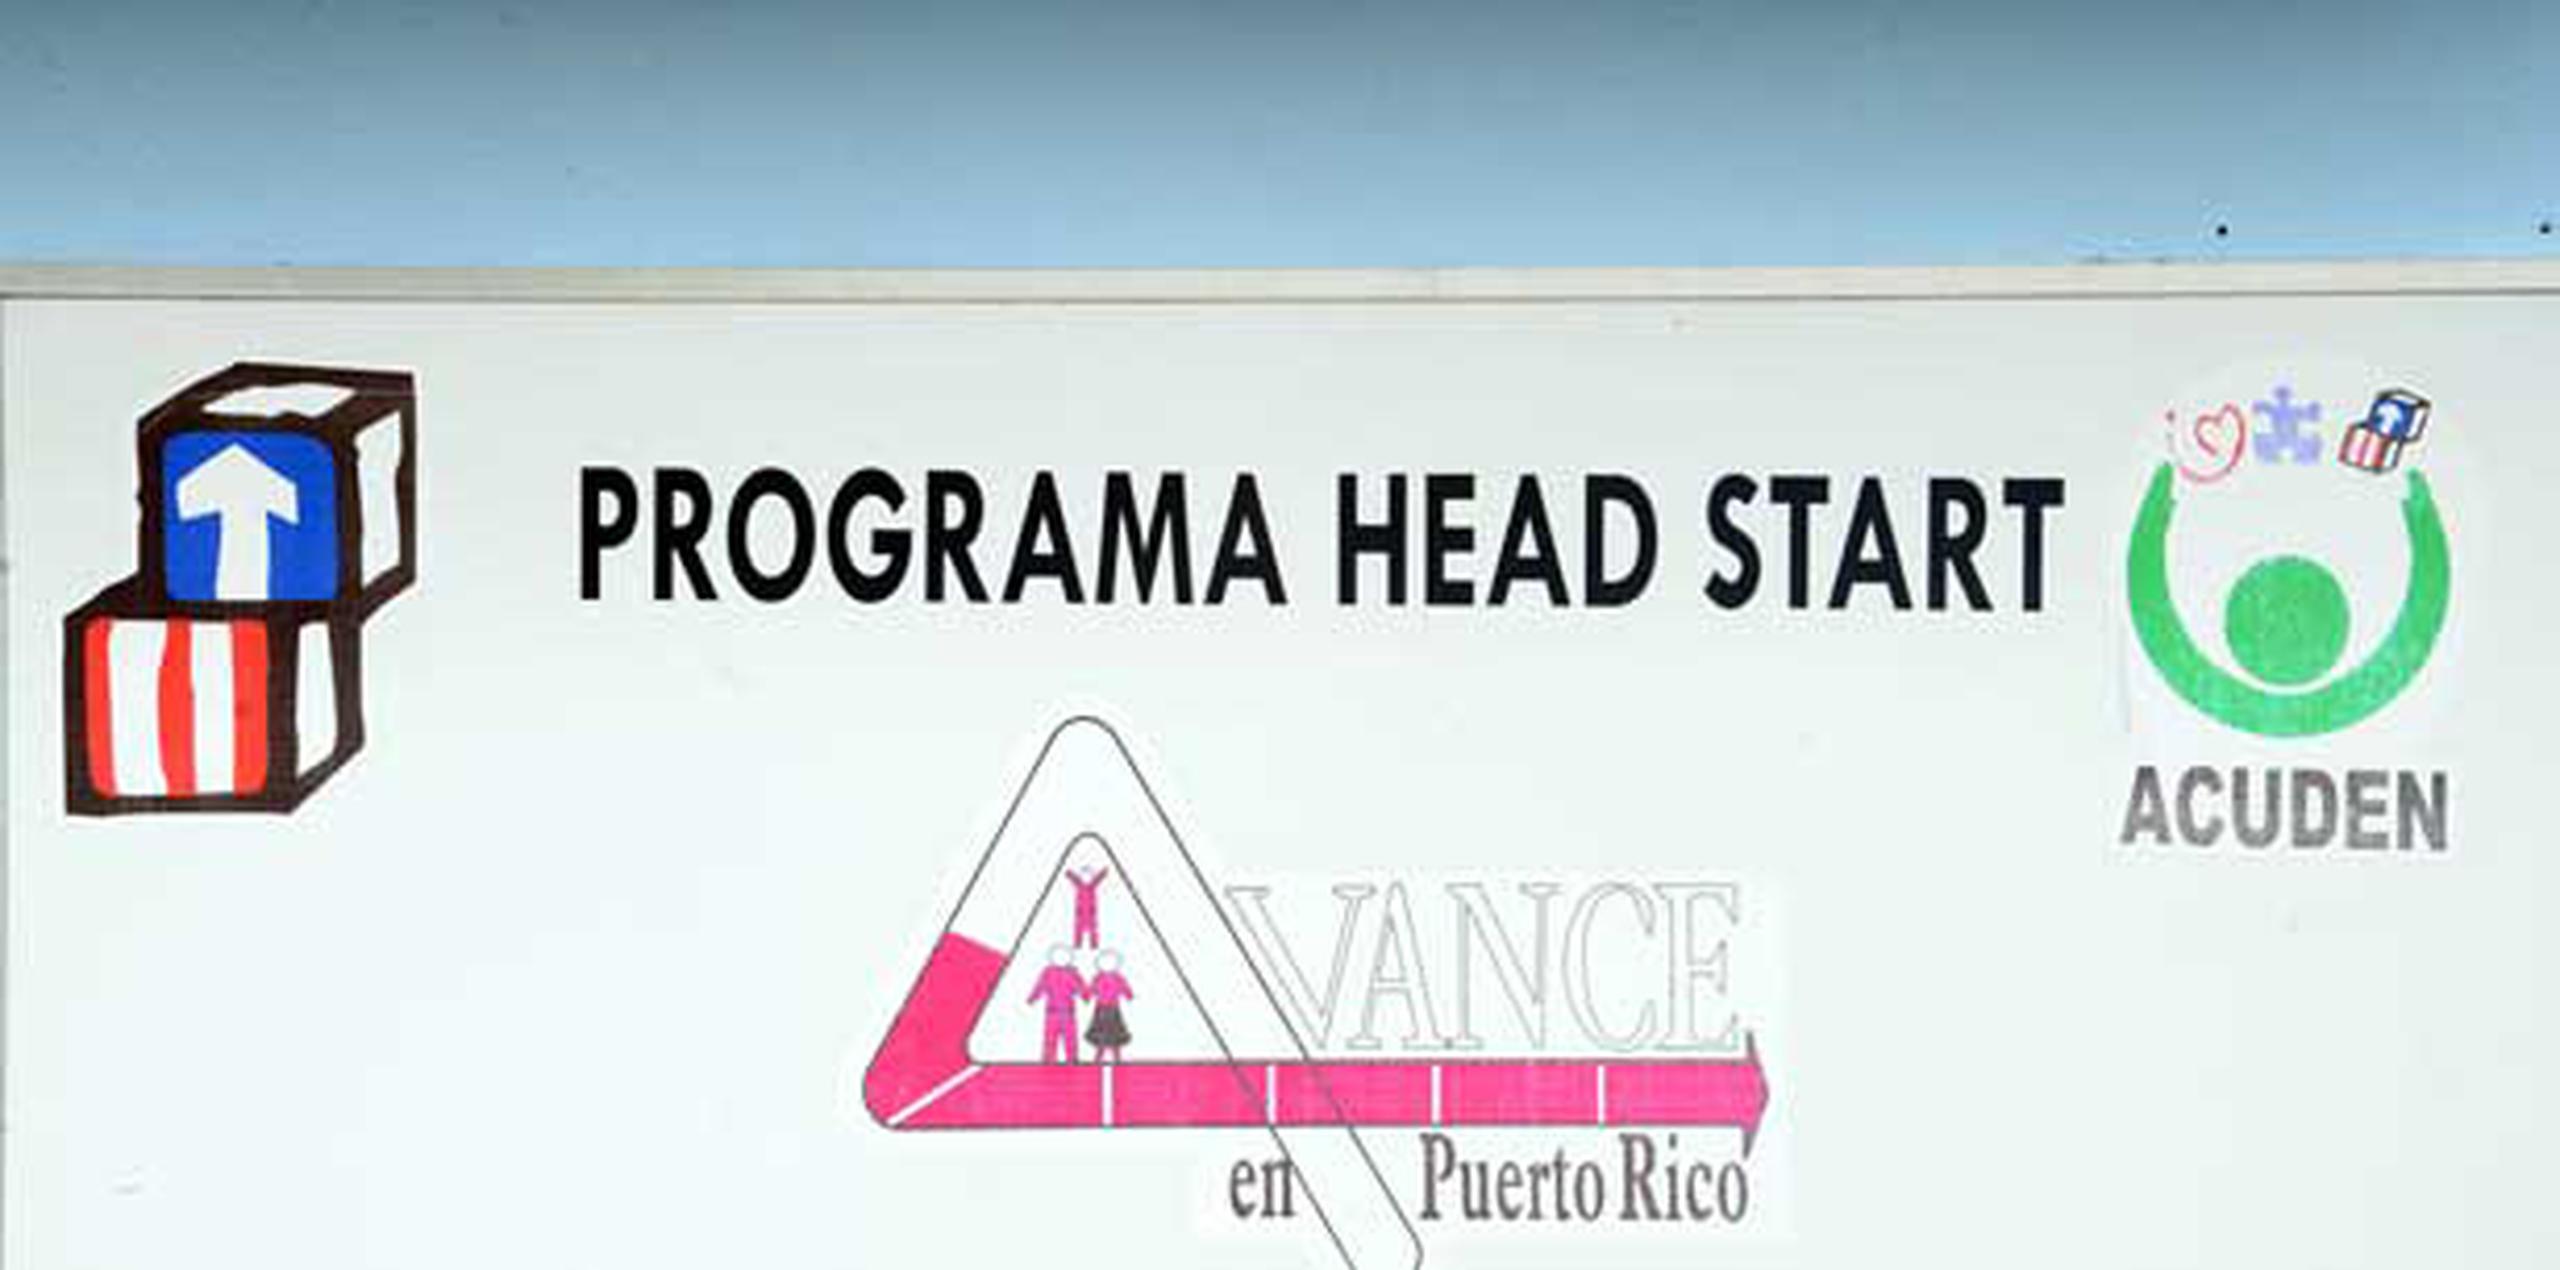 Con esta nueva asignación, la agencia dirigirá $5 millones a programas Head Start y Early Head Start en Puerto Rico. (Archivo)